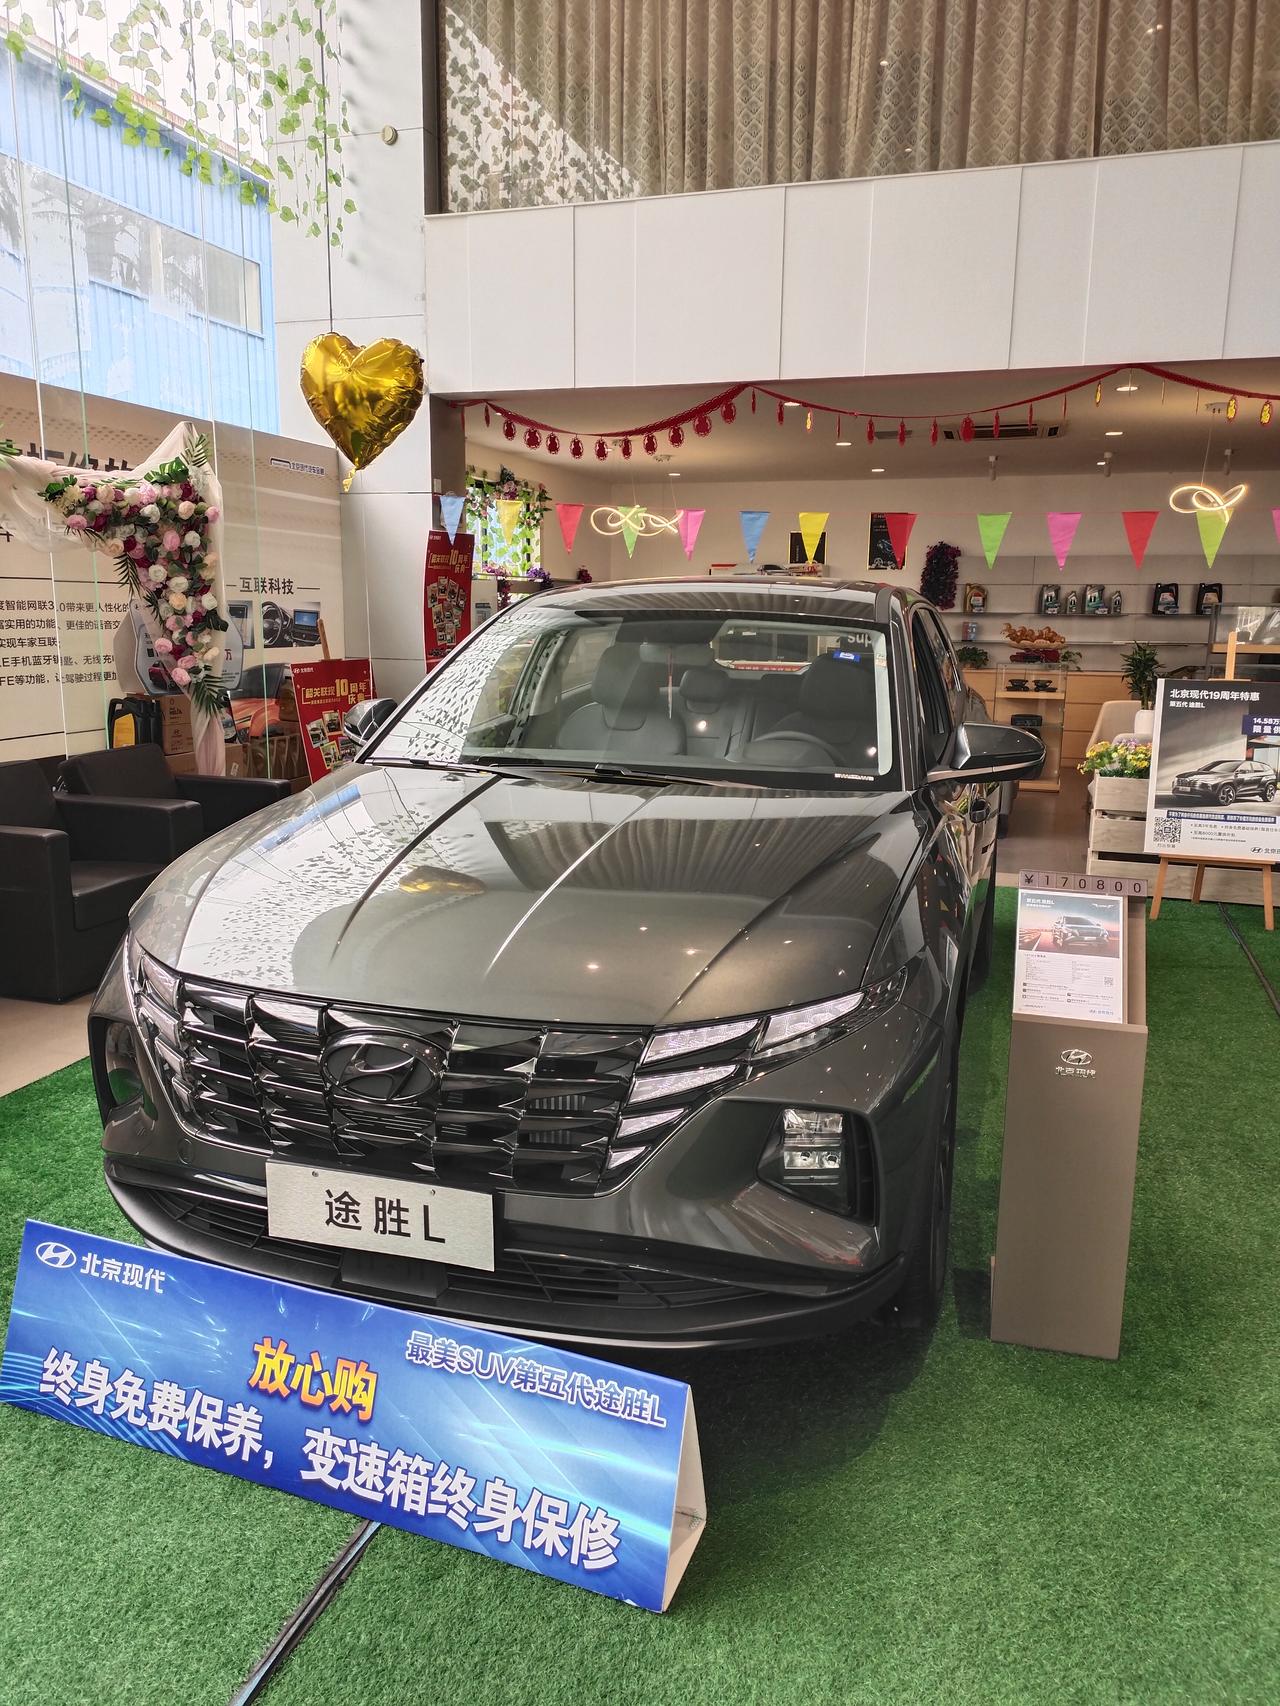 现代途胜 广东省政府给的置换补贴是不是一定要先办好旧车过户手续再去买新车才可以领取？